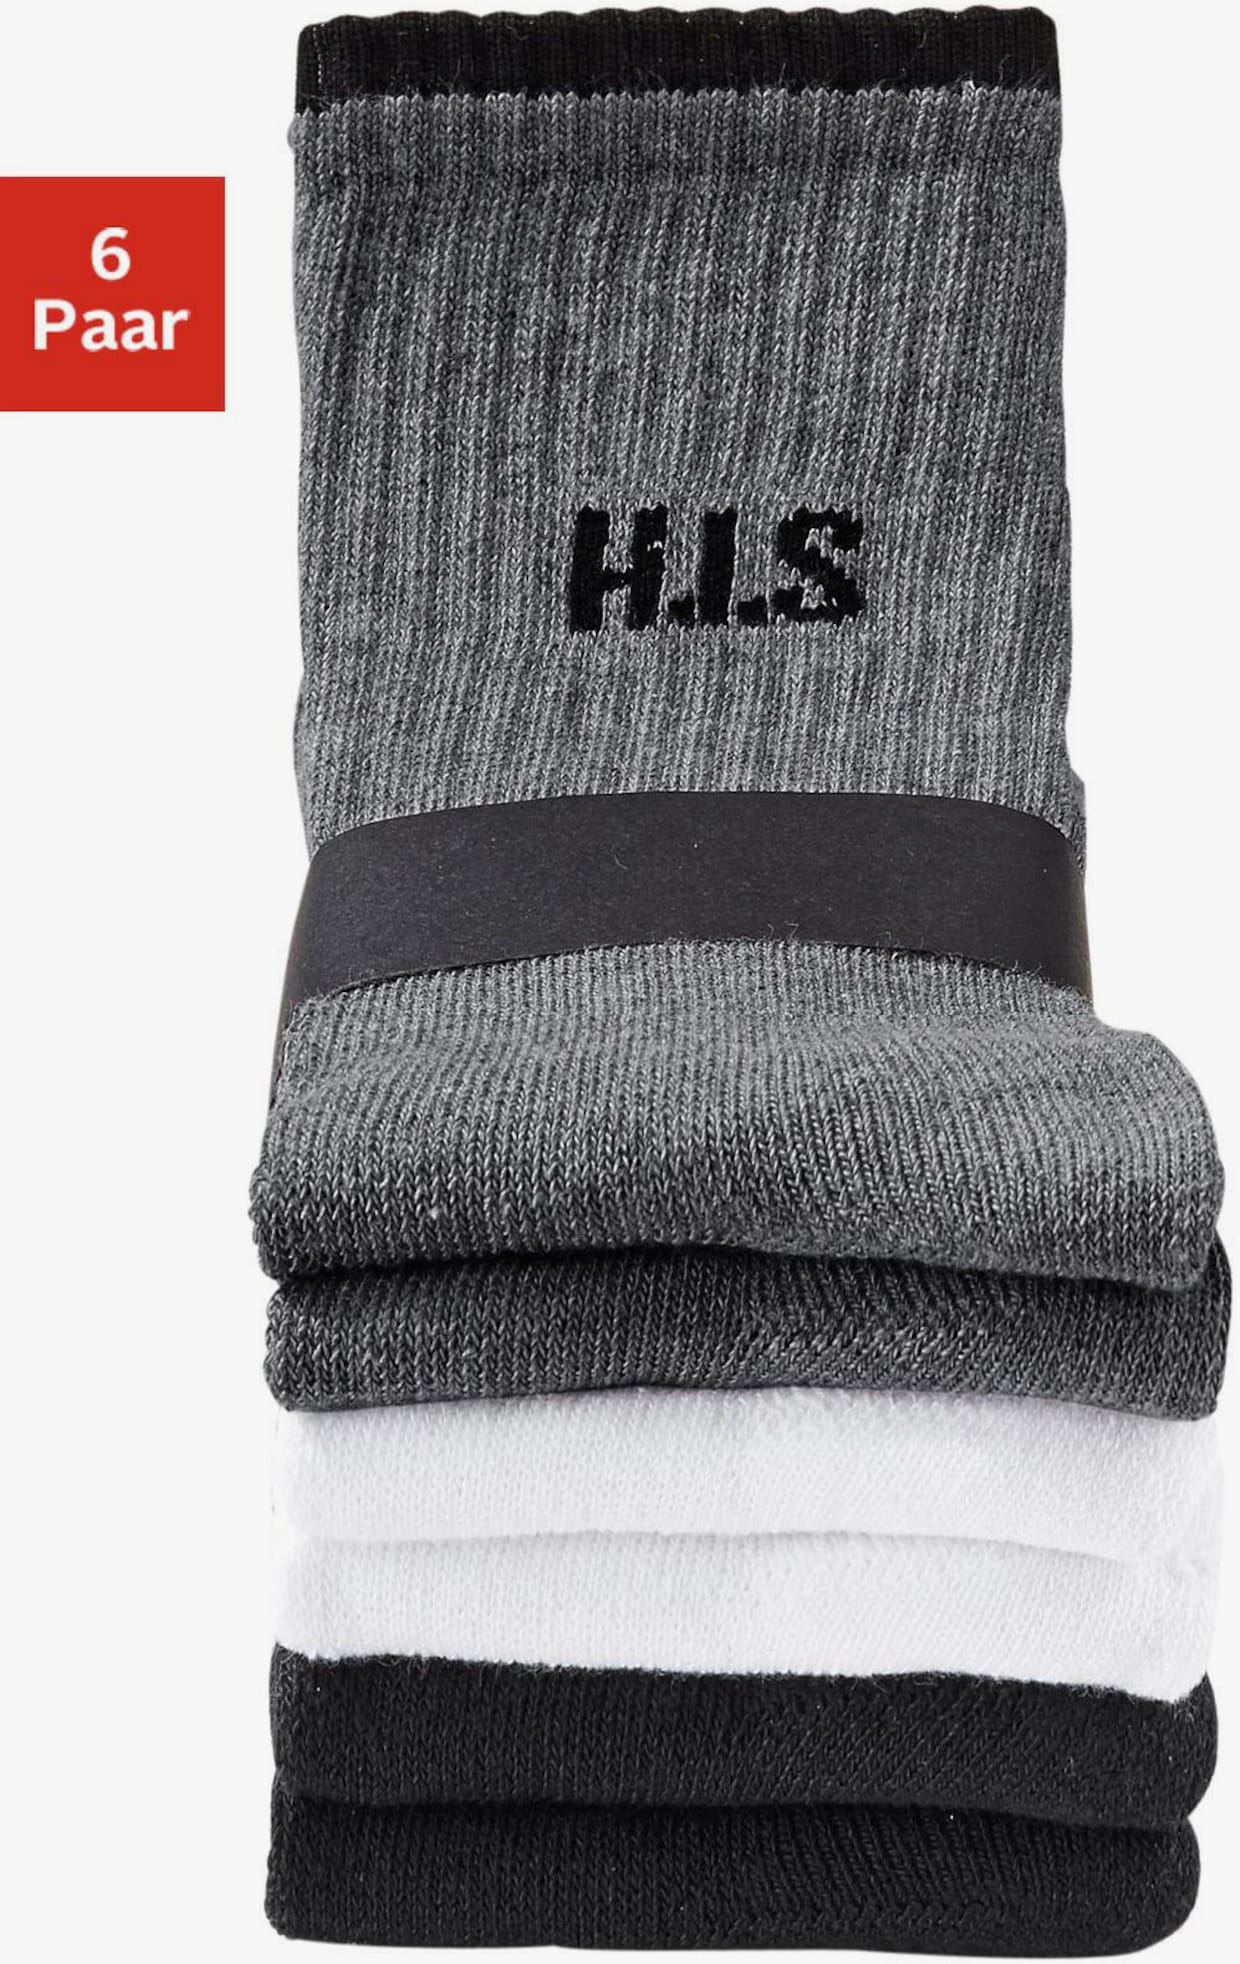 H.I.S Sportsocken - 2x weiss, 2x schwarz, 2x grau meliert